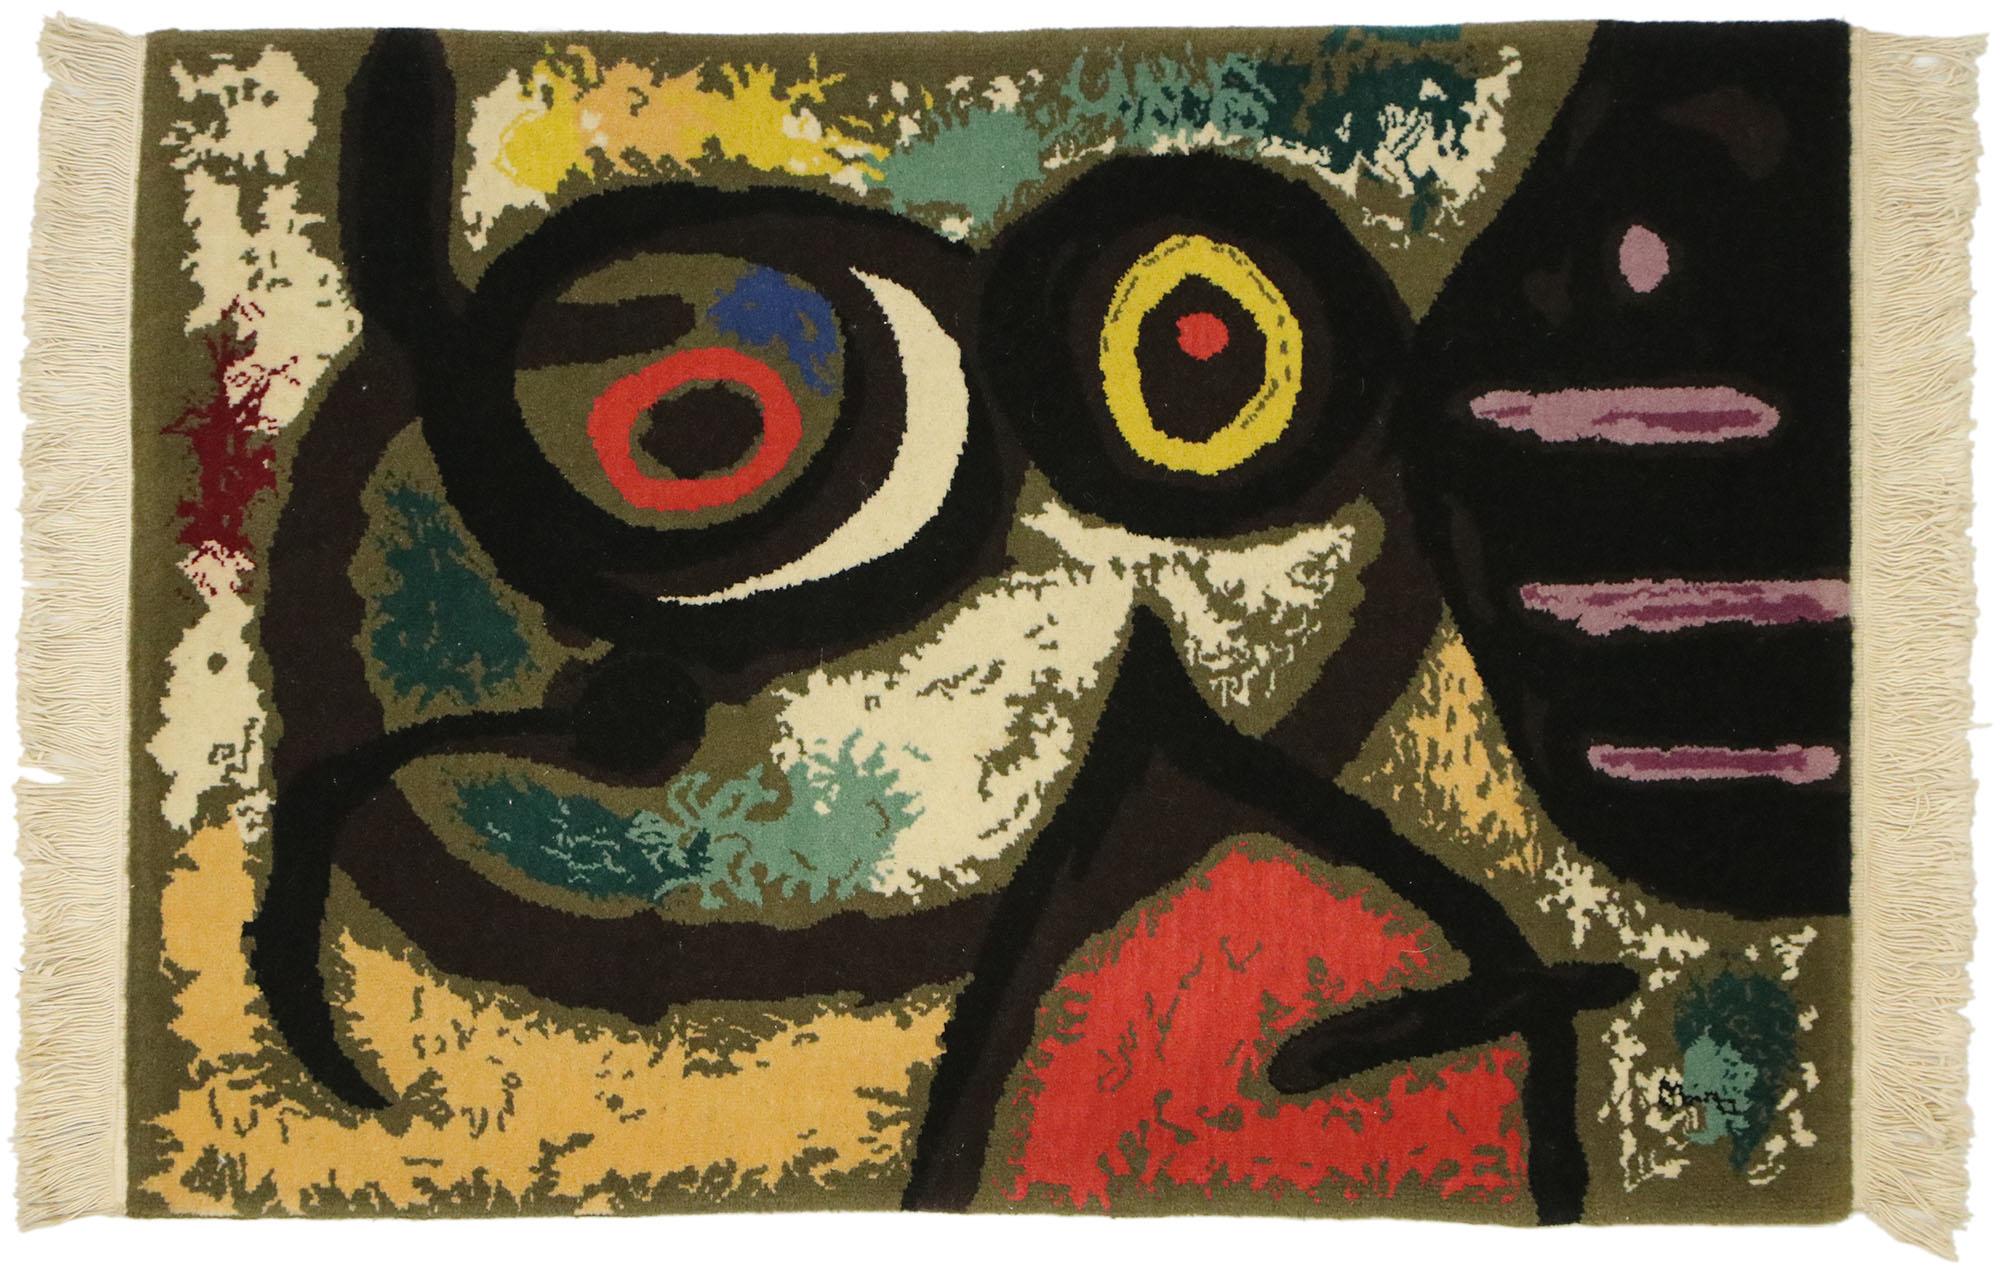 77100 Tapisserie surréaliste inspirée de l'œuvre de Joan Miro 